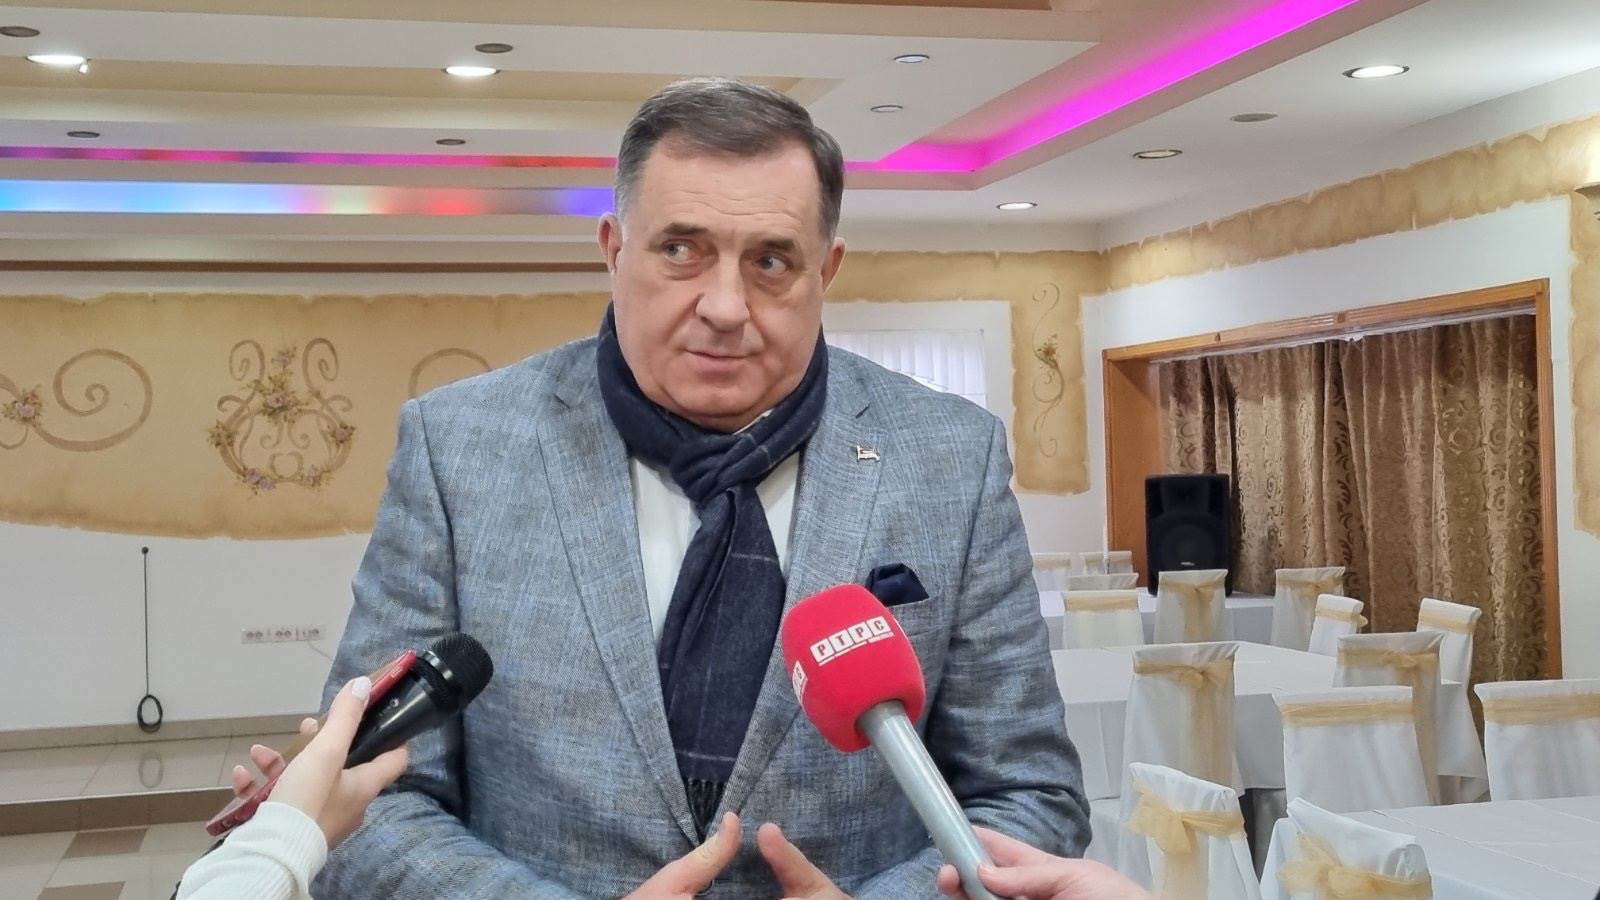  Transparensi prijavio Dodika zbog sukoba interesa 